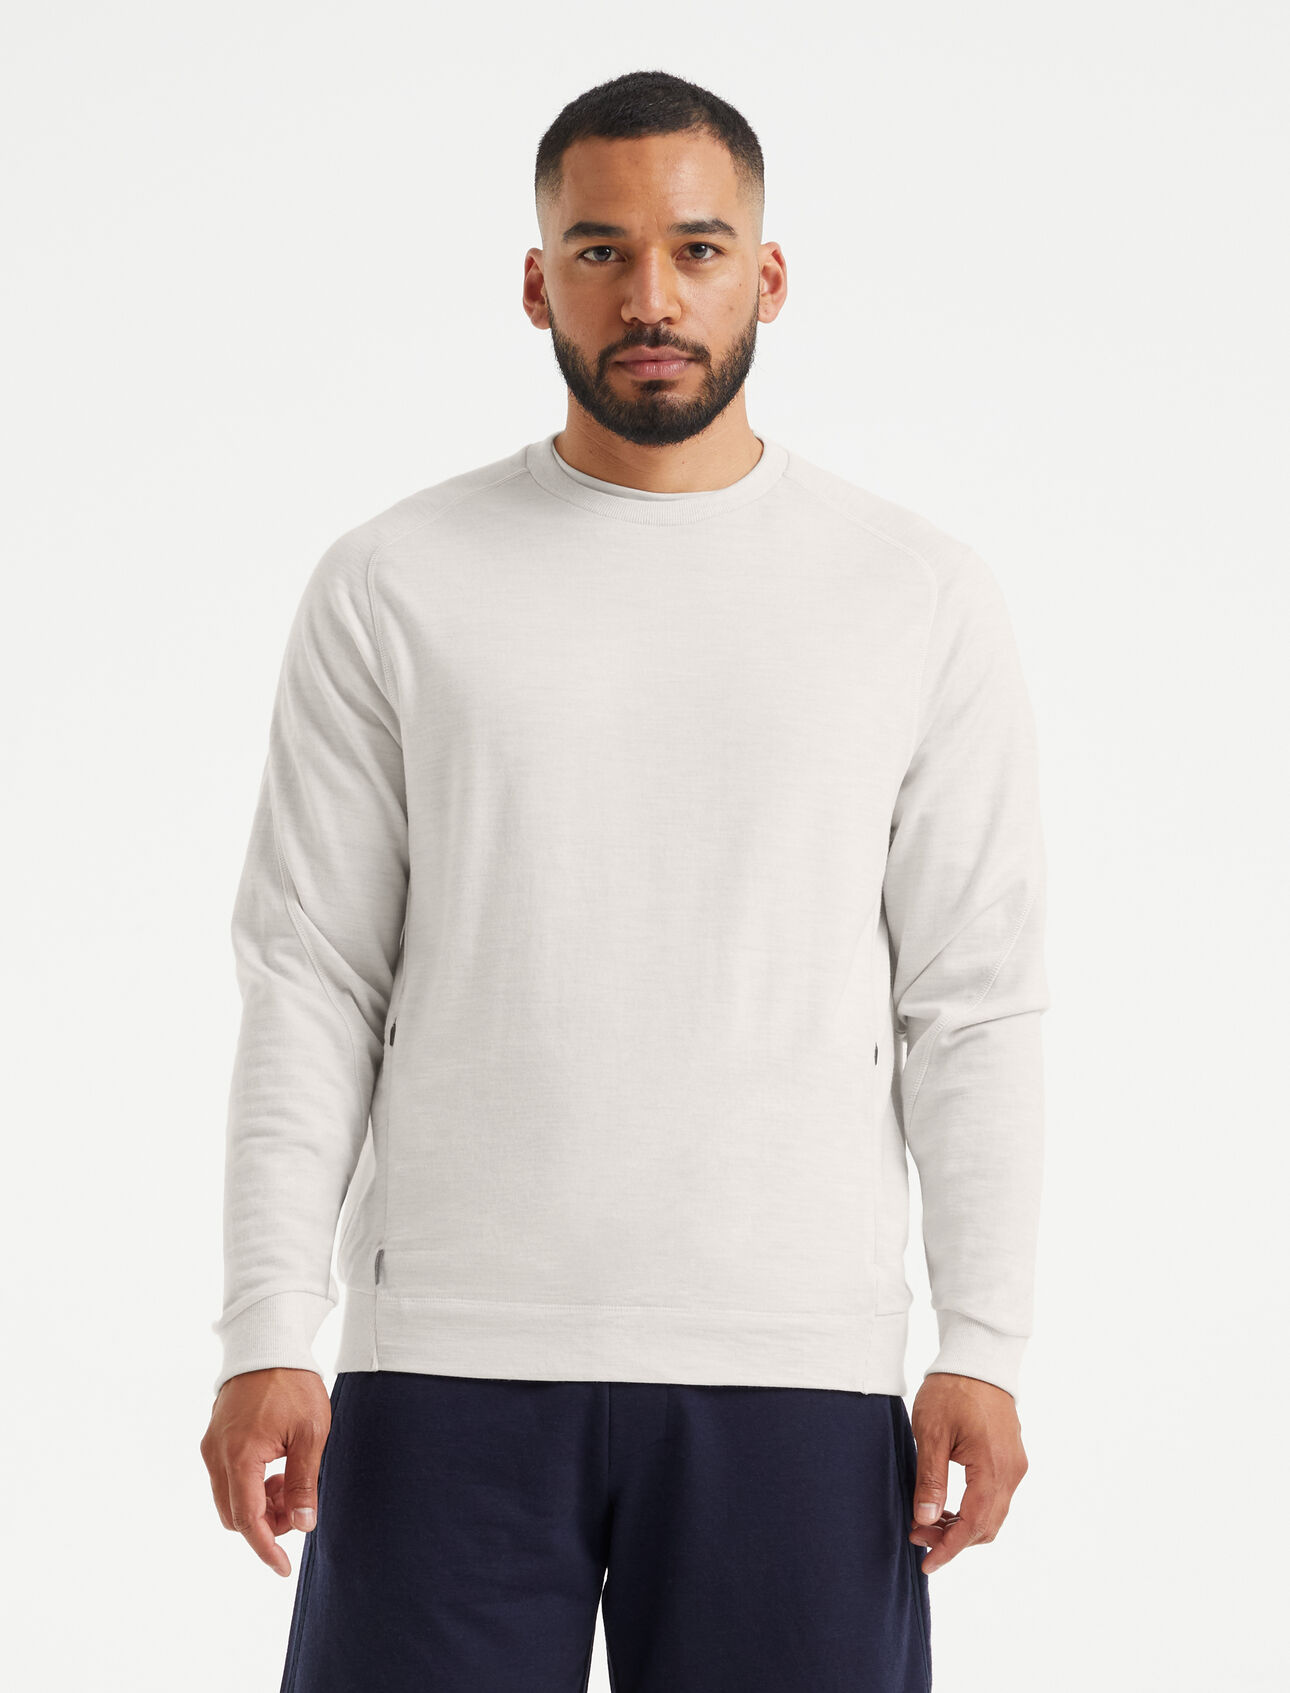 Sweatshirt mérinos Homme Haut classique à col rond composé d’un tissu éponge en laine 100 % mérinos, le sweatshirt mérinos allie confort et modernité.